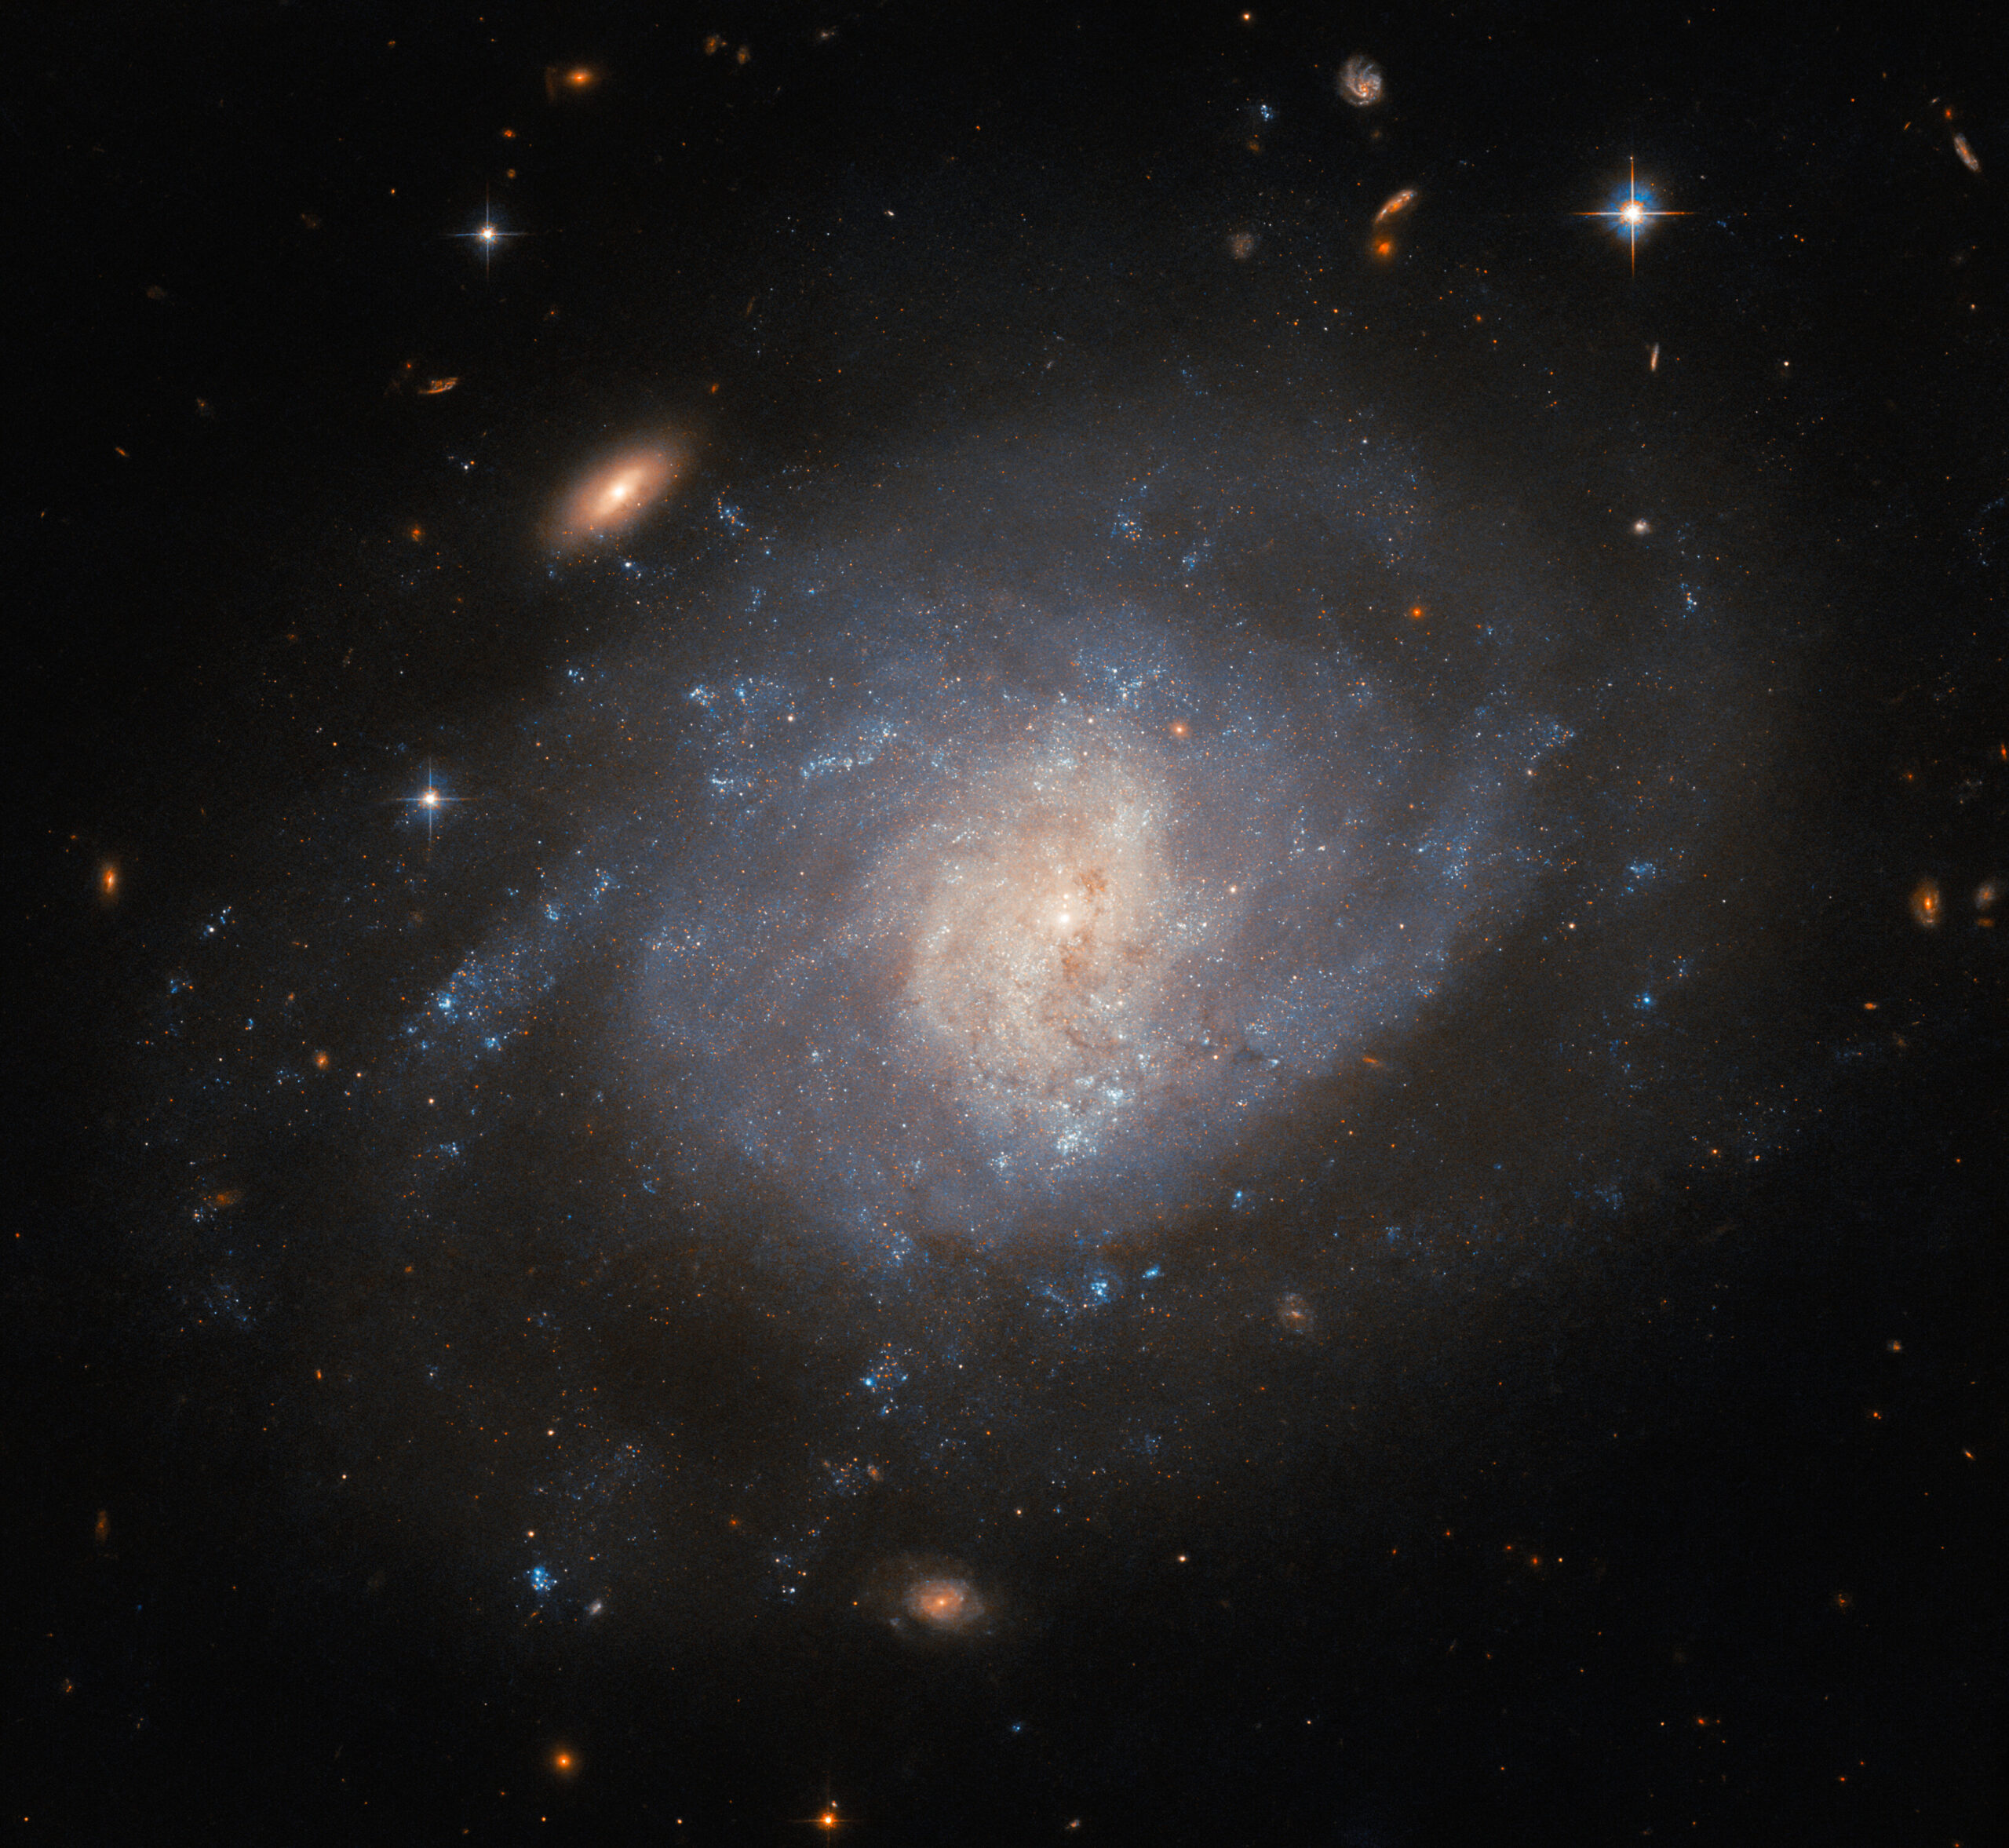 NGC 941